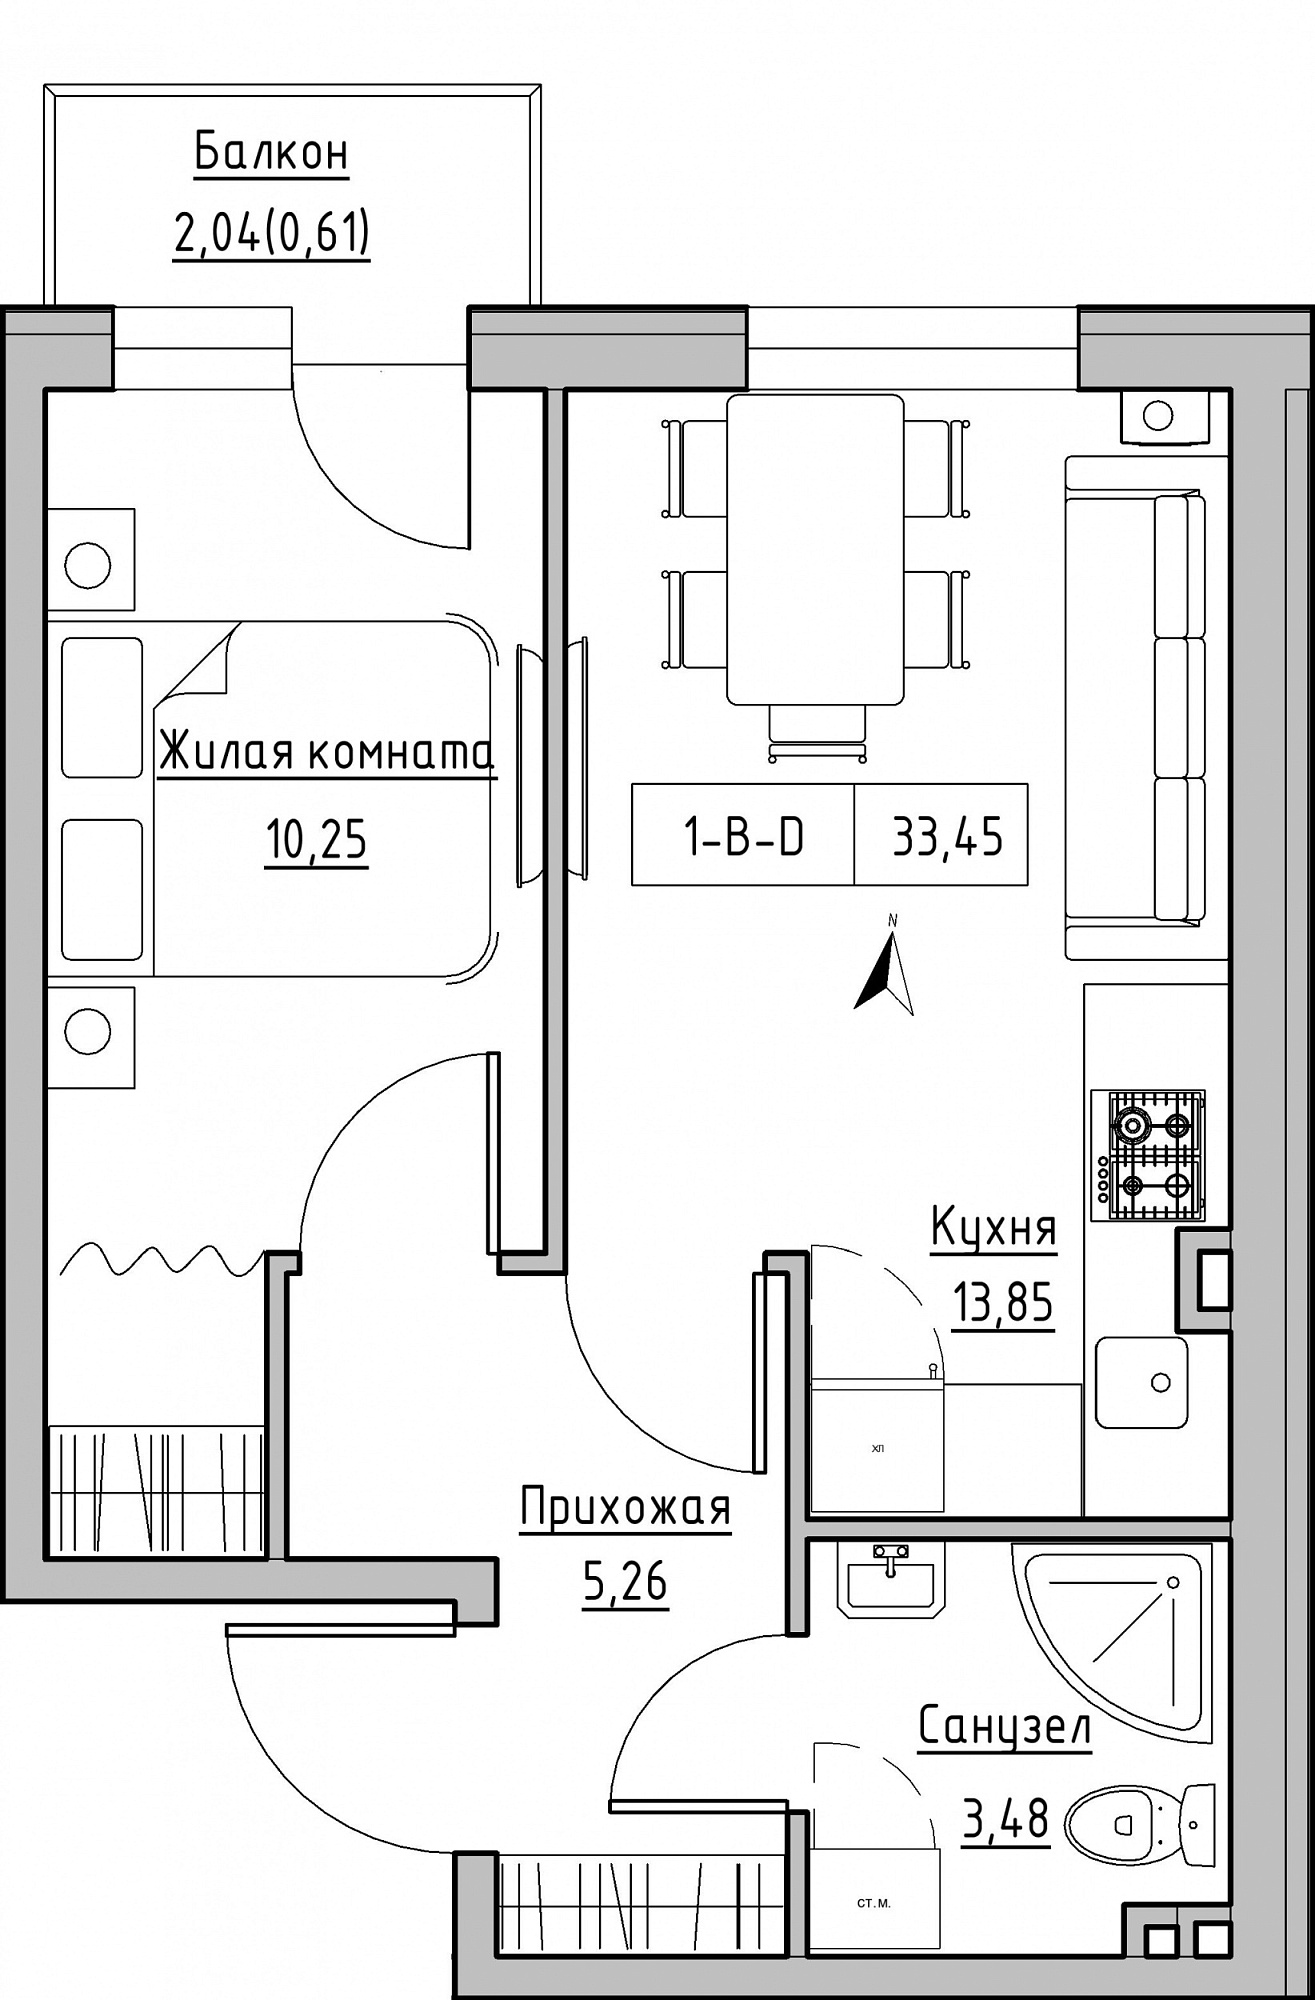 Планировка 1-к квартира площей 33.45м2, KS-024-03/0003.